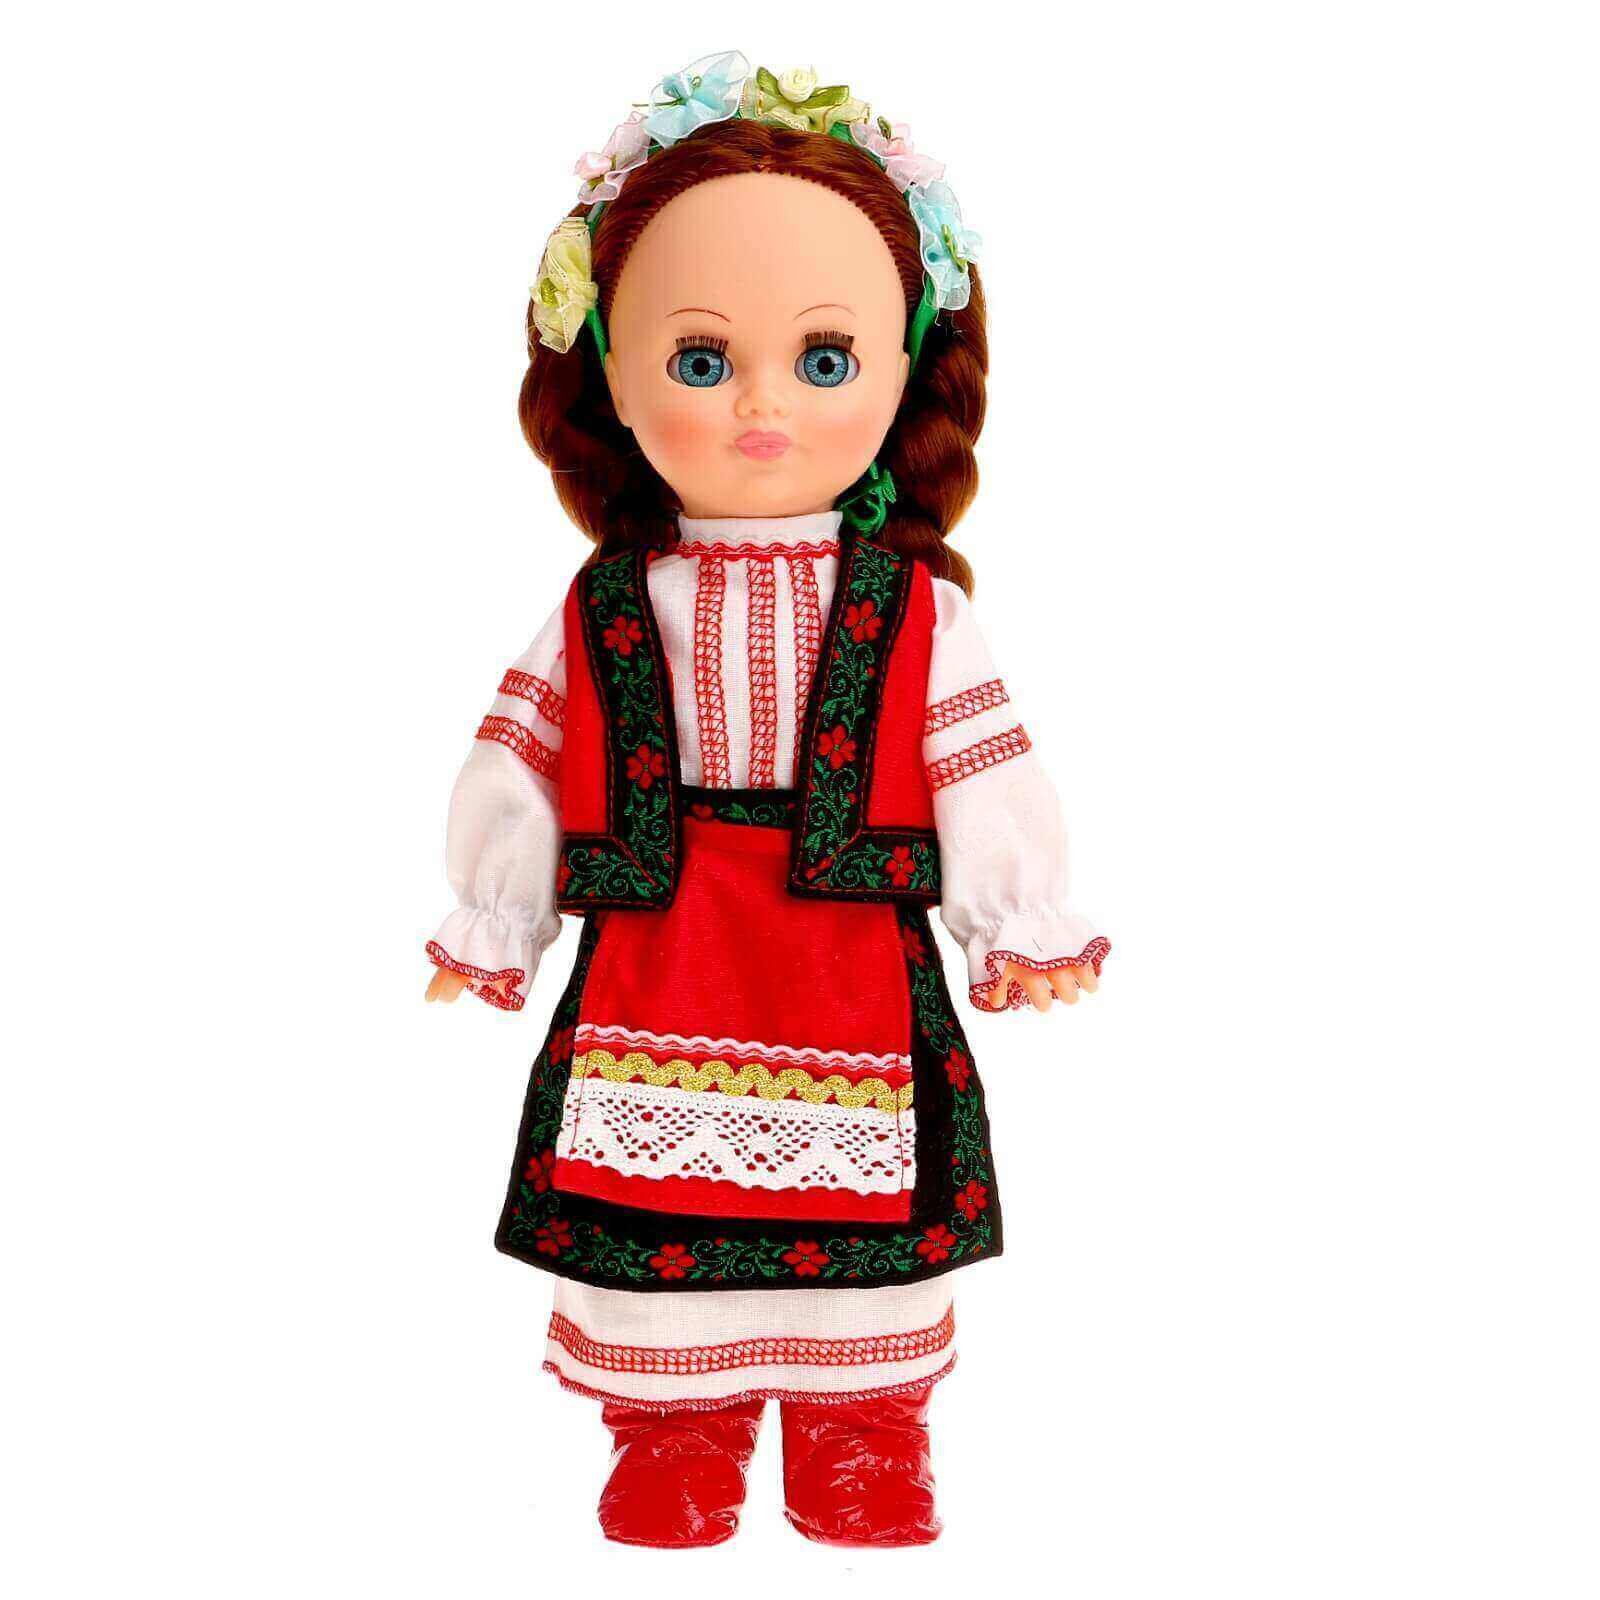 Купить кукол в национальных костюмах. Национальная украинская кукла. Кукла в украинском национальном костюме. Белорусские куклы. Белорусские национальные куклы.